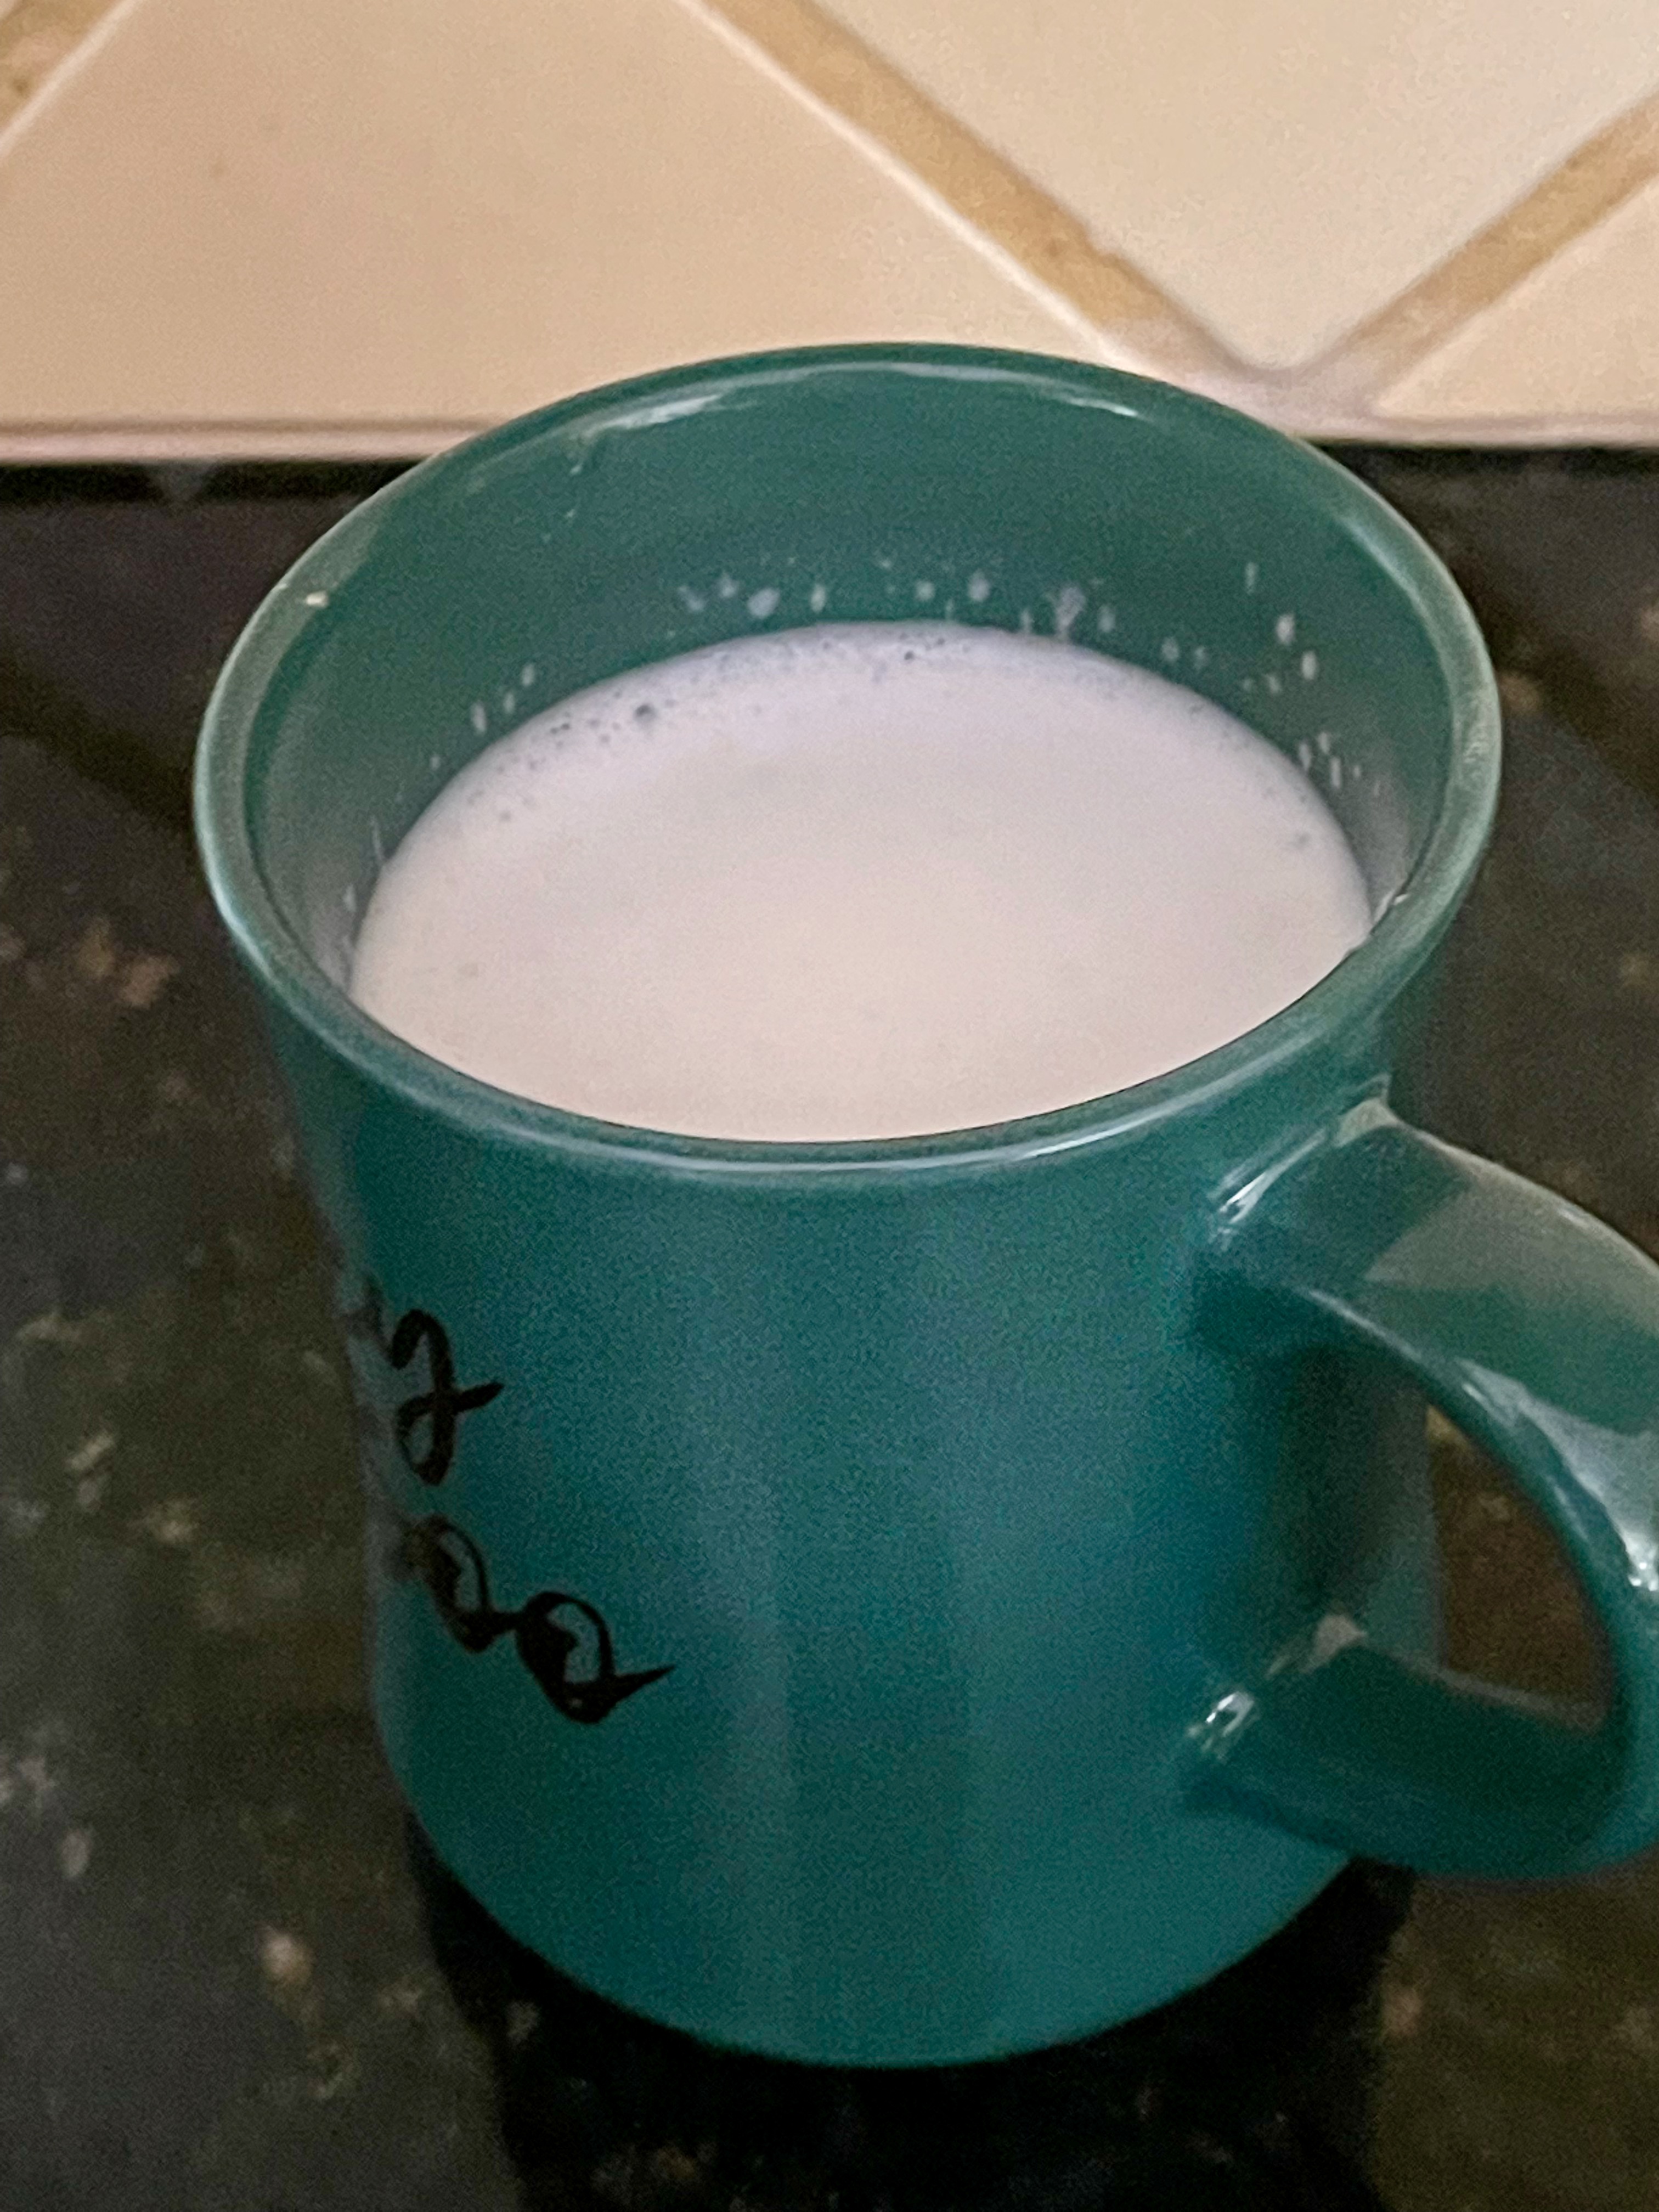 Best White Hot Chocolate